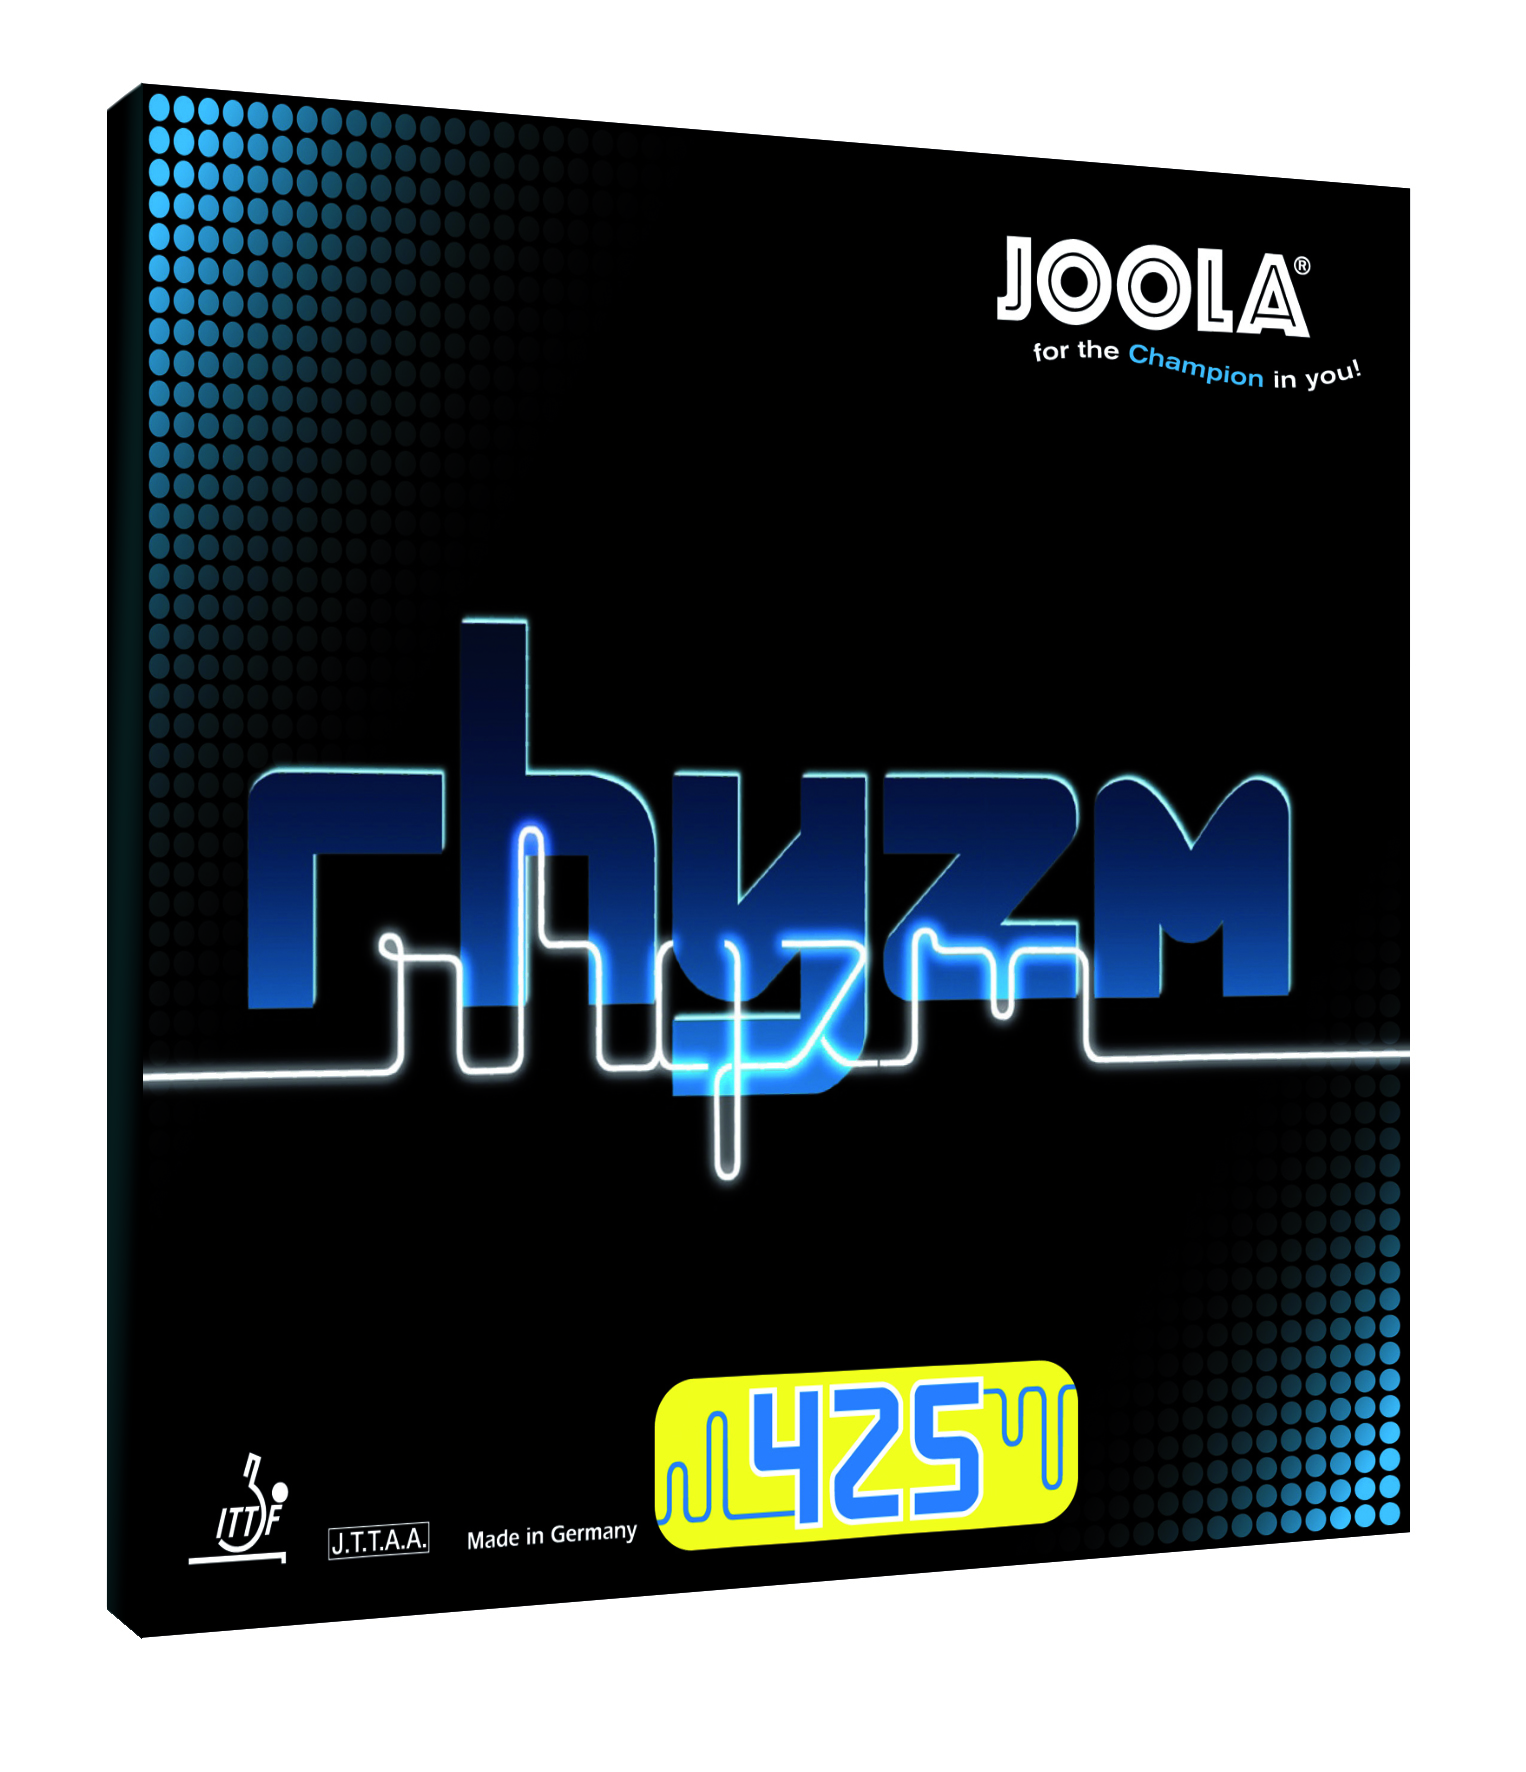 Joola Rhyzm 425 - Tischtennis Belag von Joola